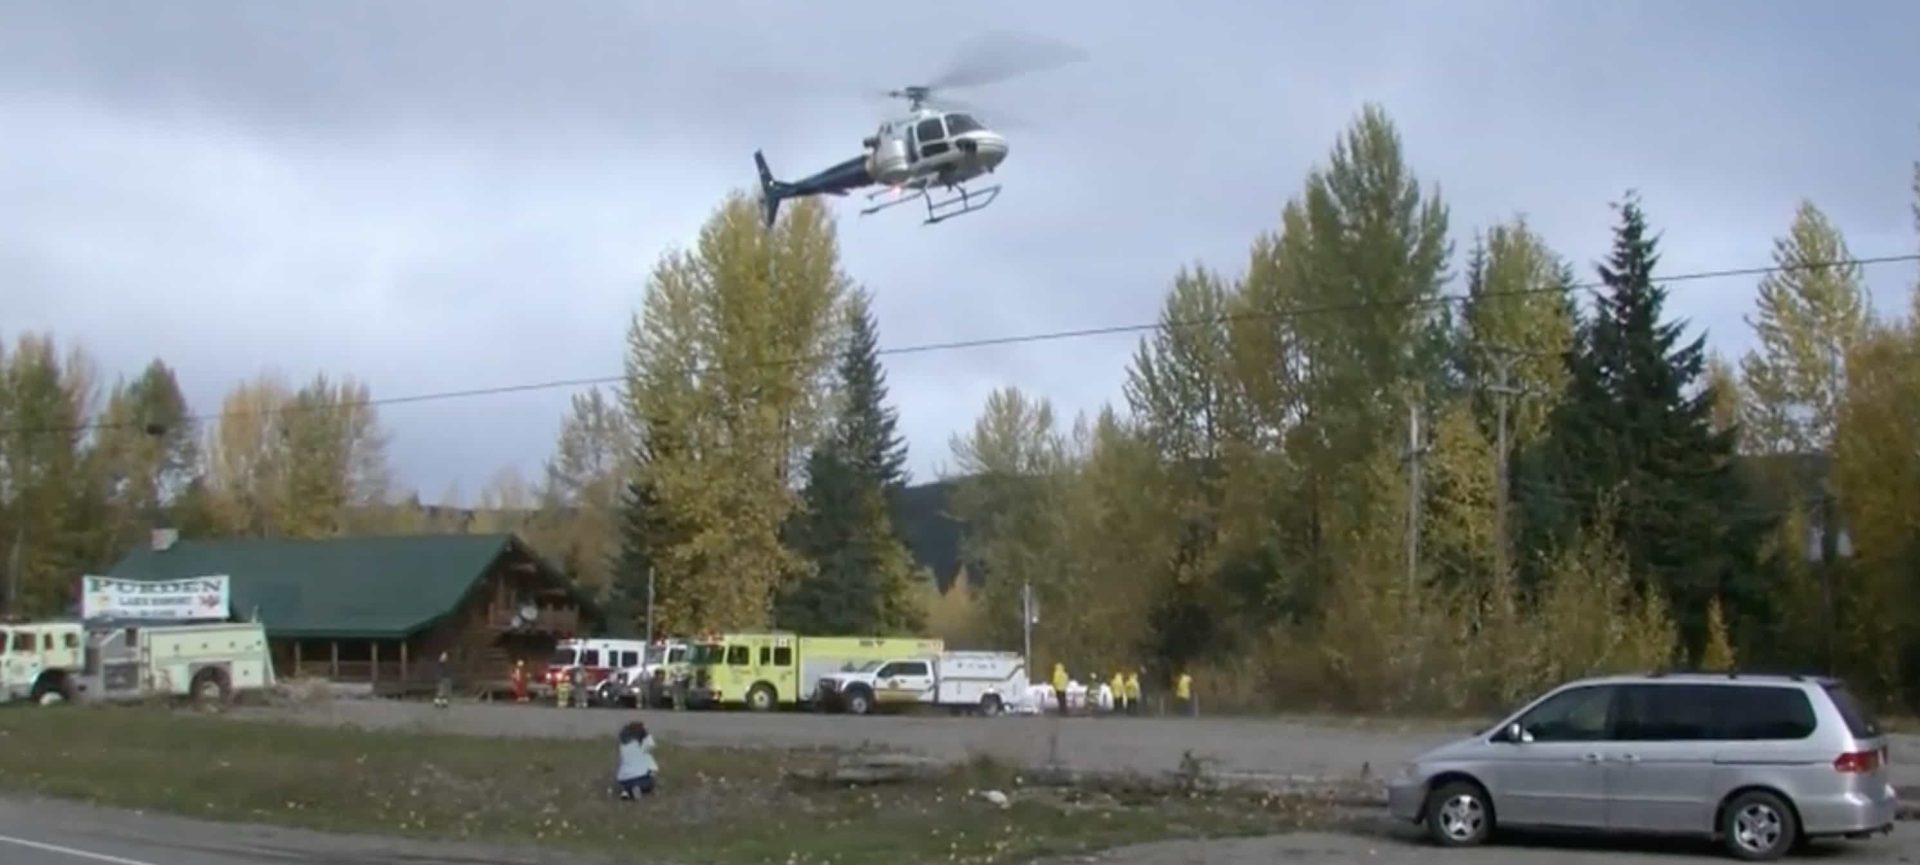 Purden Ski Village, British Columbia, helicopter crash